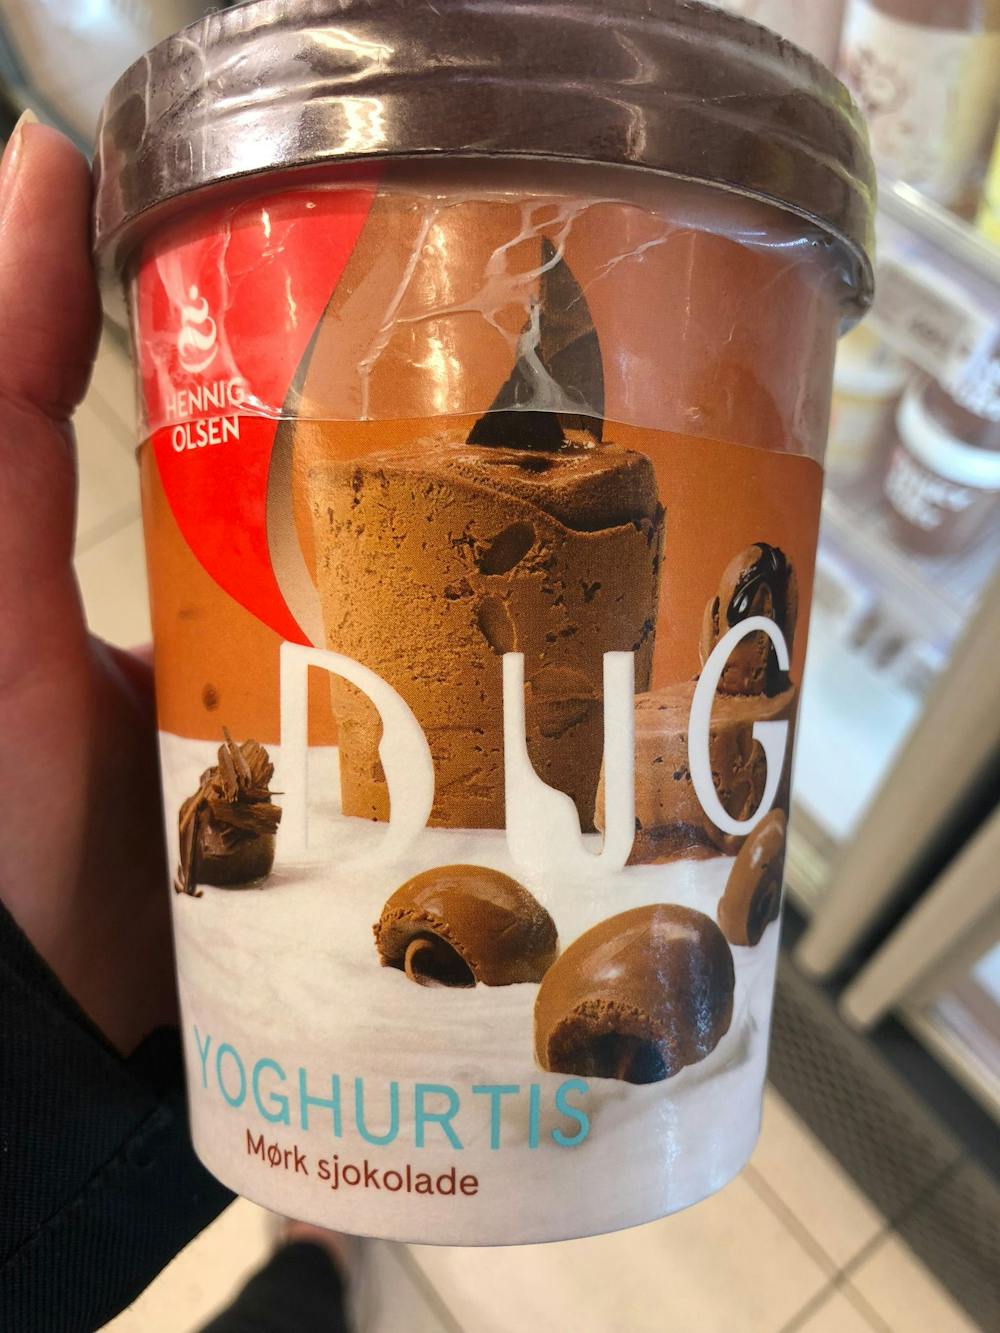 Dugg yoghurtis mørk sjokolade, Hennig Olsen